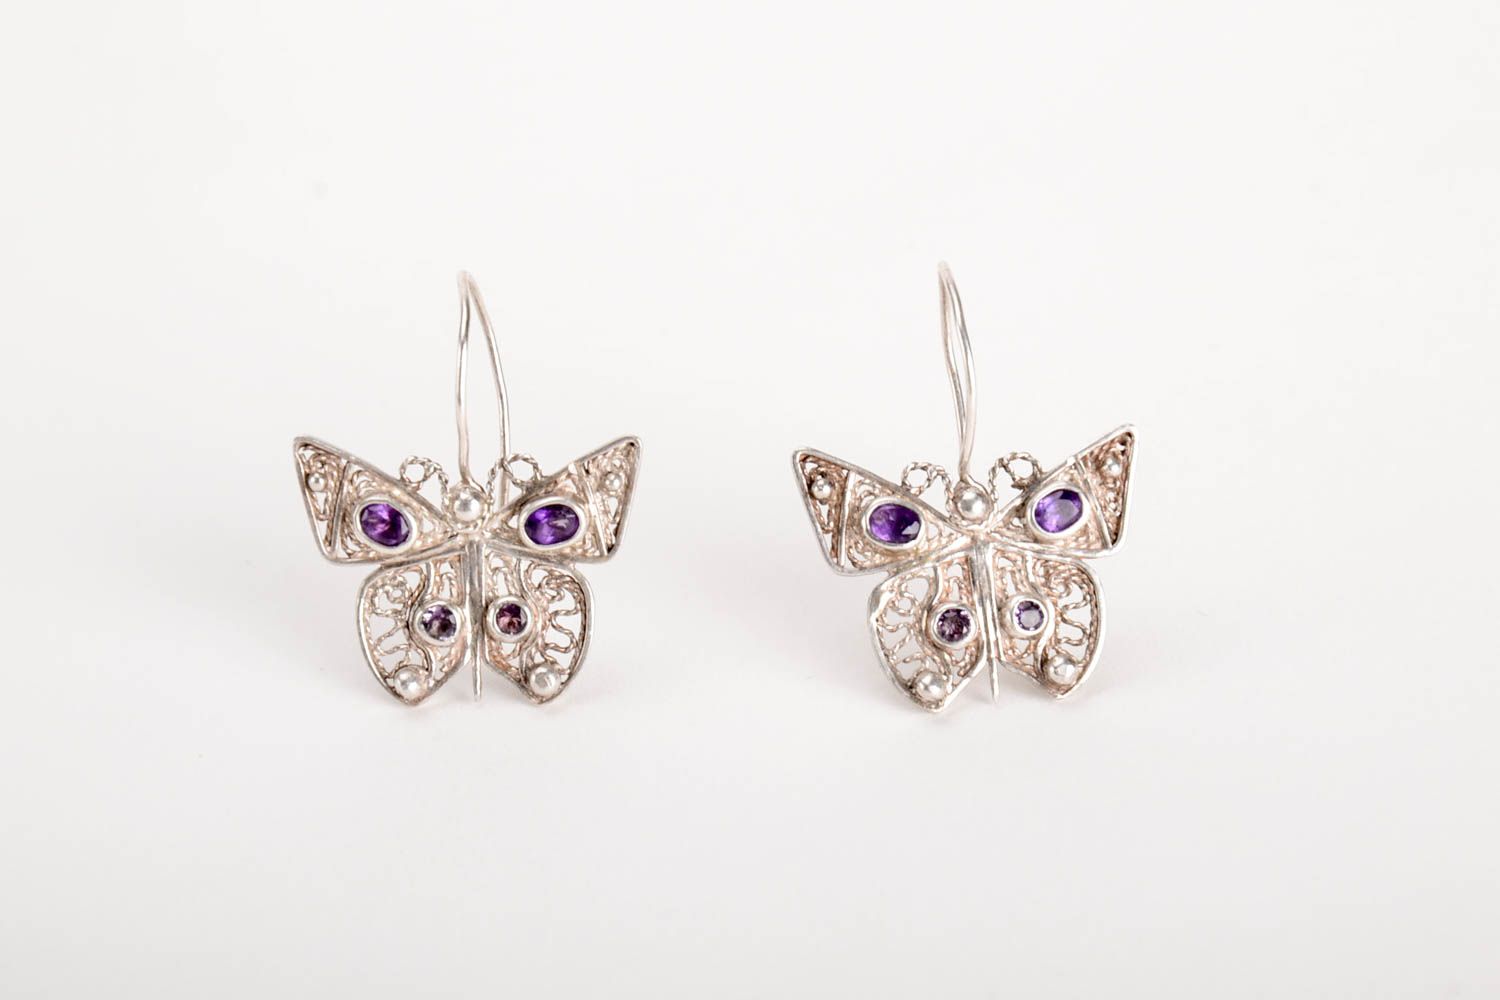 Handmade earrings unusual earrings silver earrings for women gift ideas photo 2